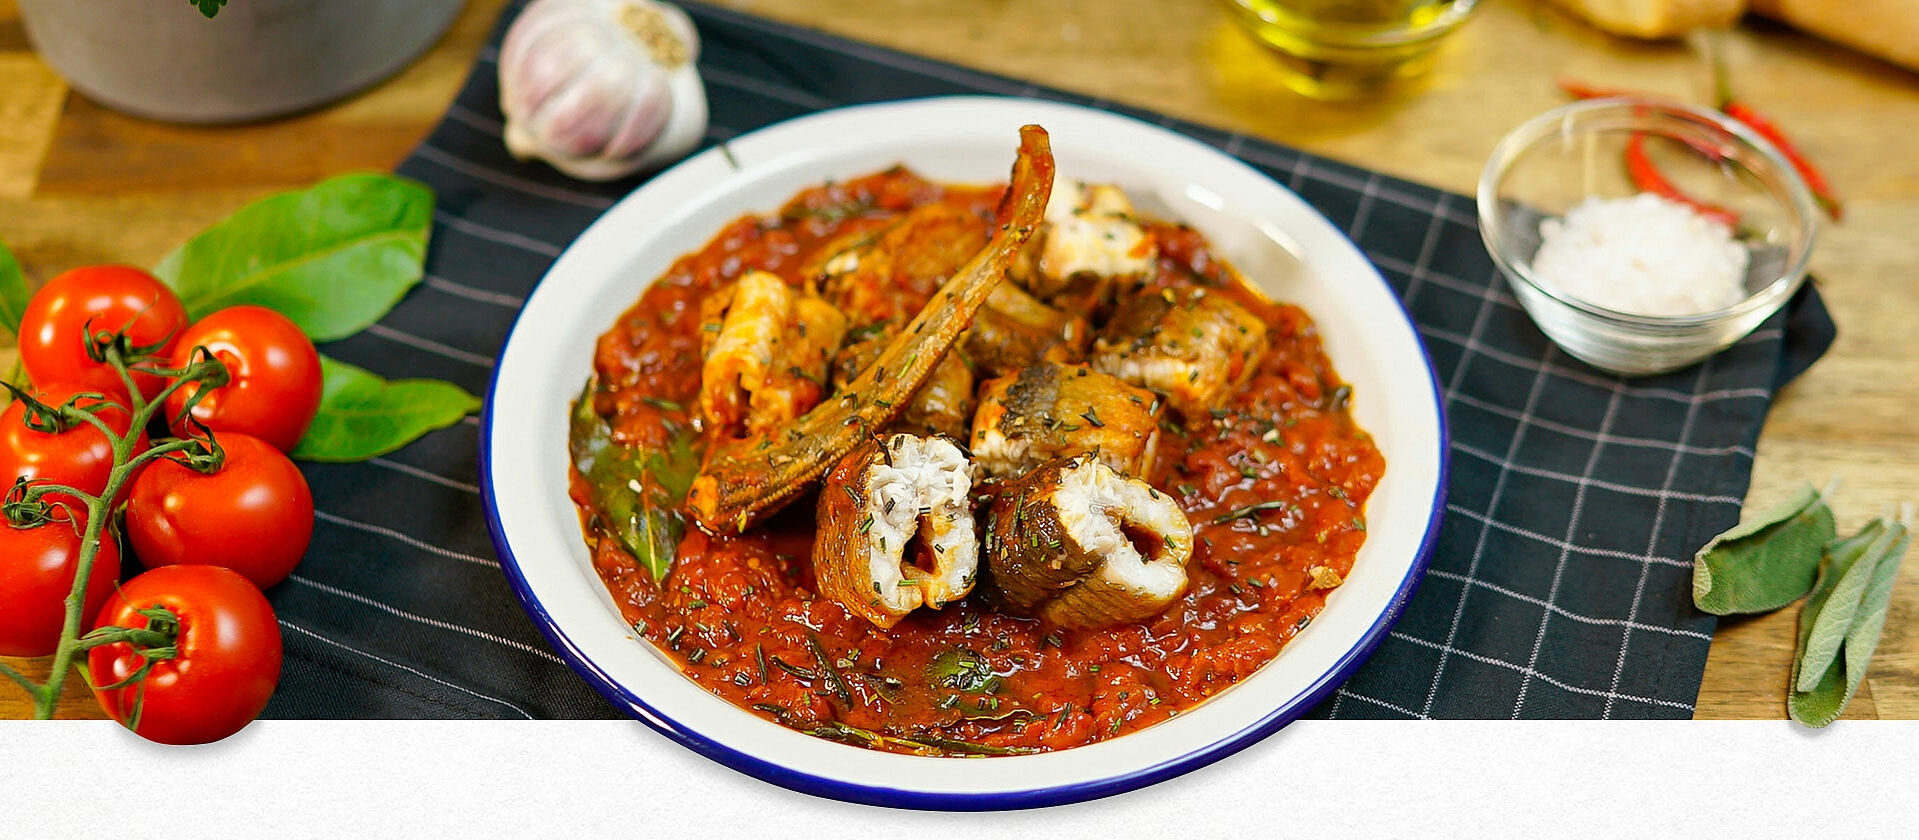 Auf einem weißen Teller mit blauen Rand ist ein traditionelles italienisches Aal-Rezept zu sehen. Der Aal liegt in Tomatensoße. Verschiedene frische Zutaten wie Tomaten, Basilikum sind als Deko zu sehen.